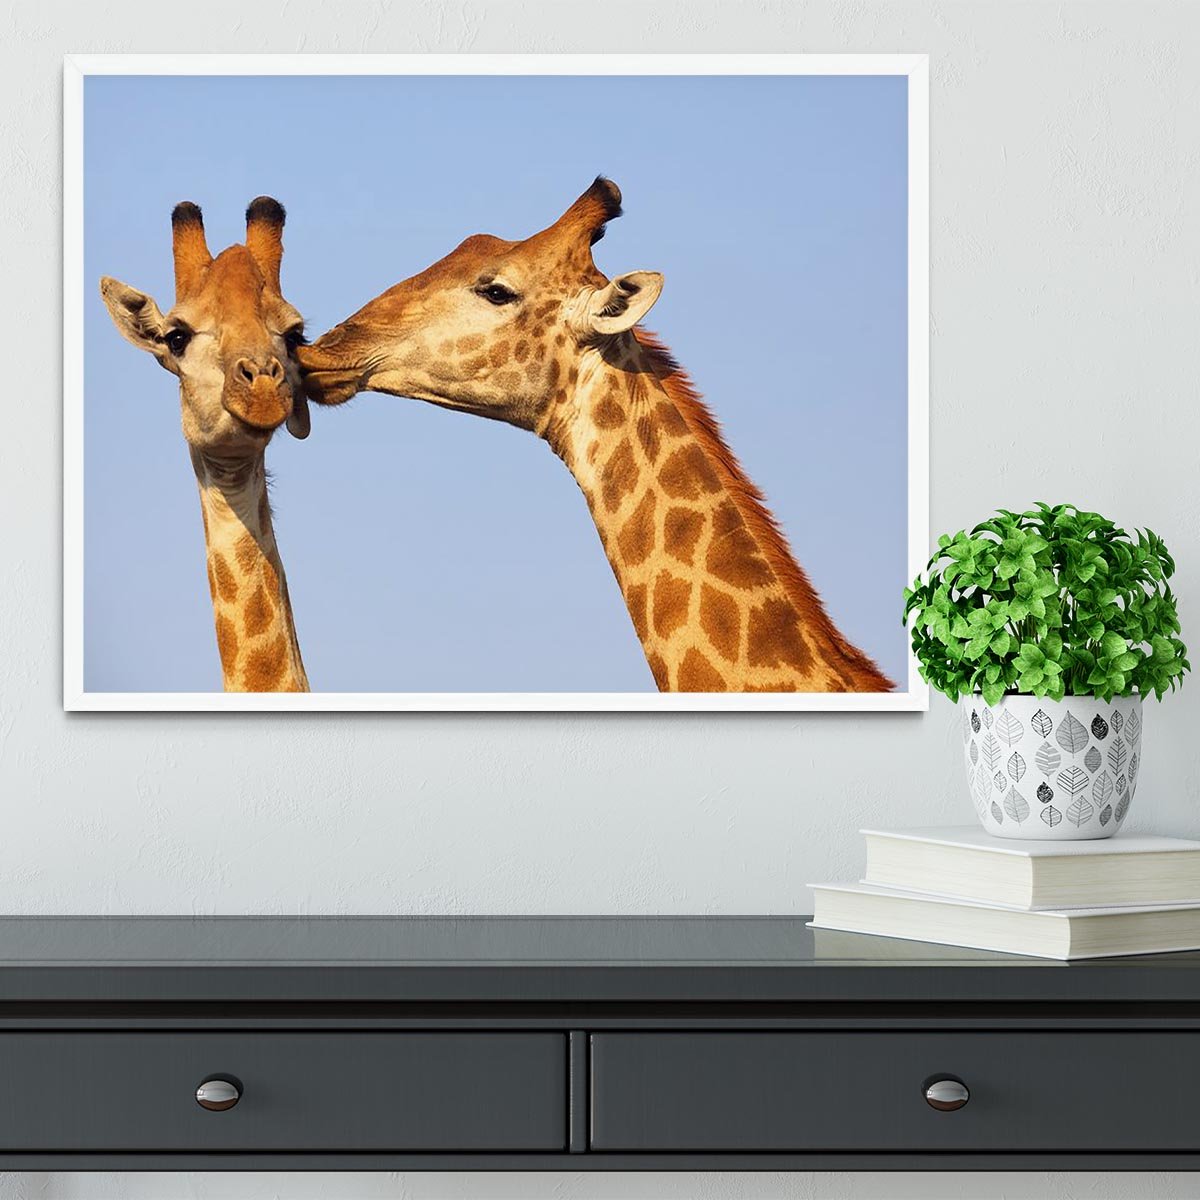 Giraffe pair bonding Framed Print - Canvas Art Rocks -6